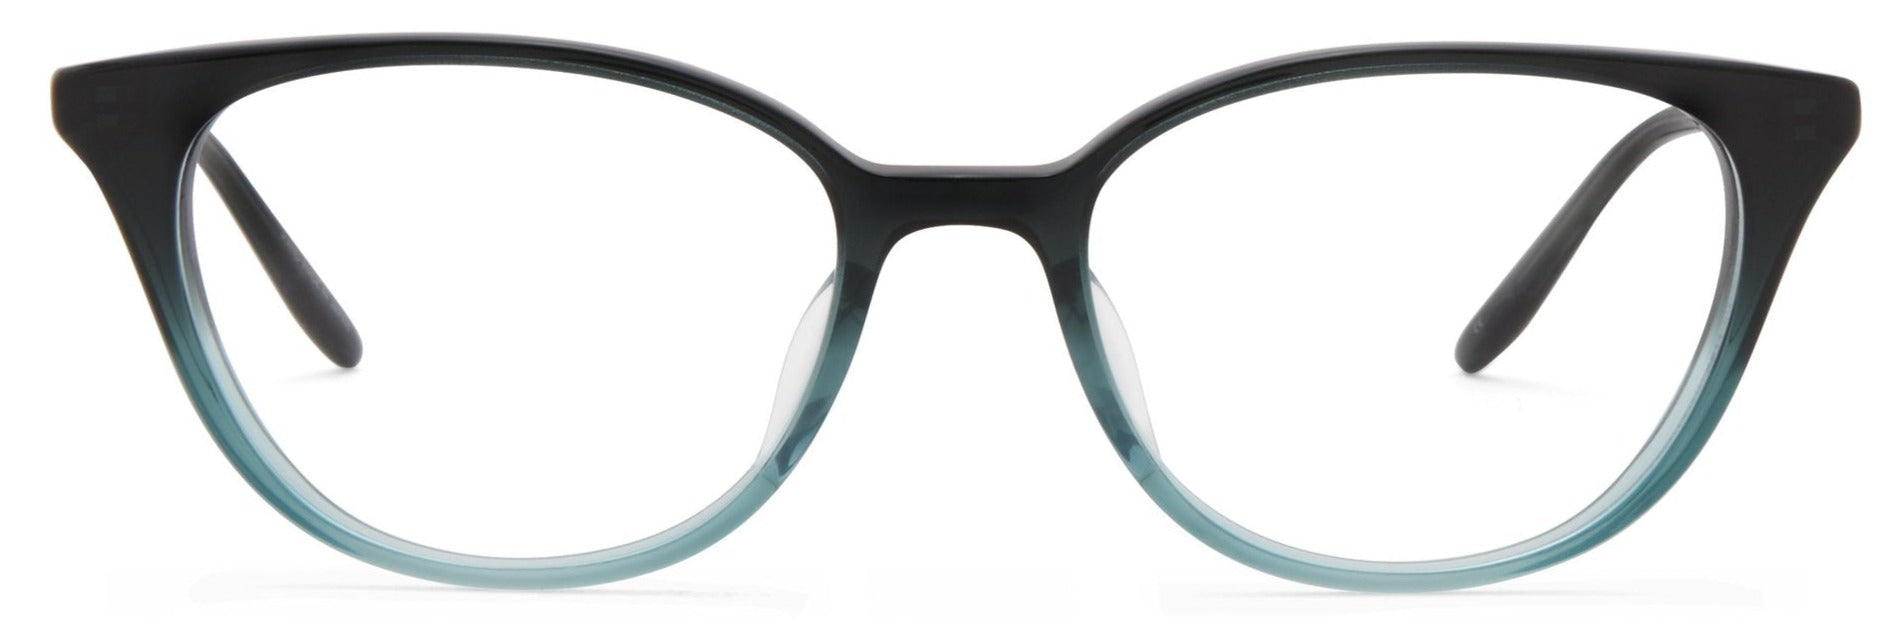 Alexander Daas - Barton Perreira Elise Eyeglasses - Teal Gradient - Front View